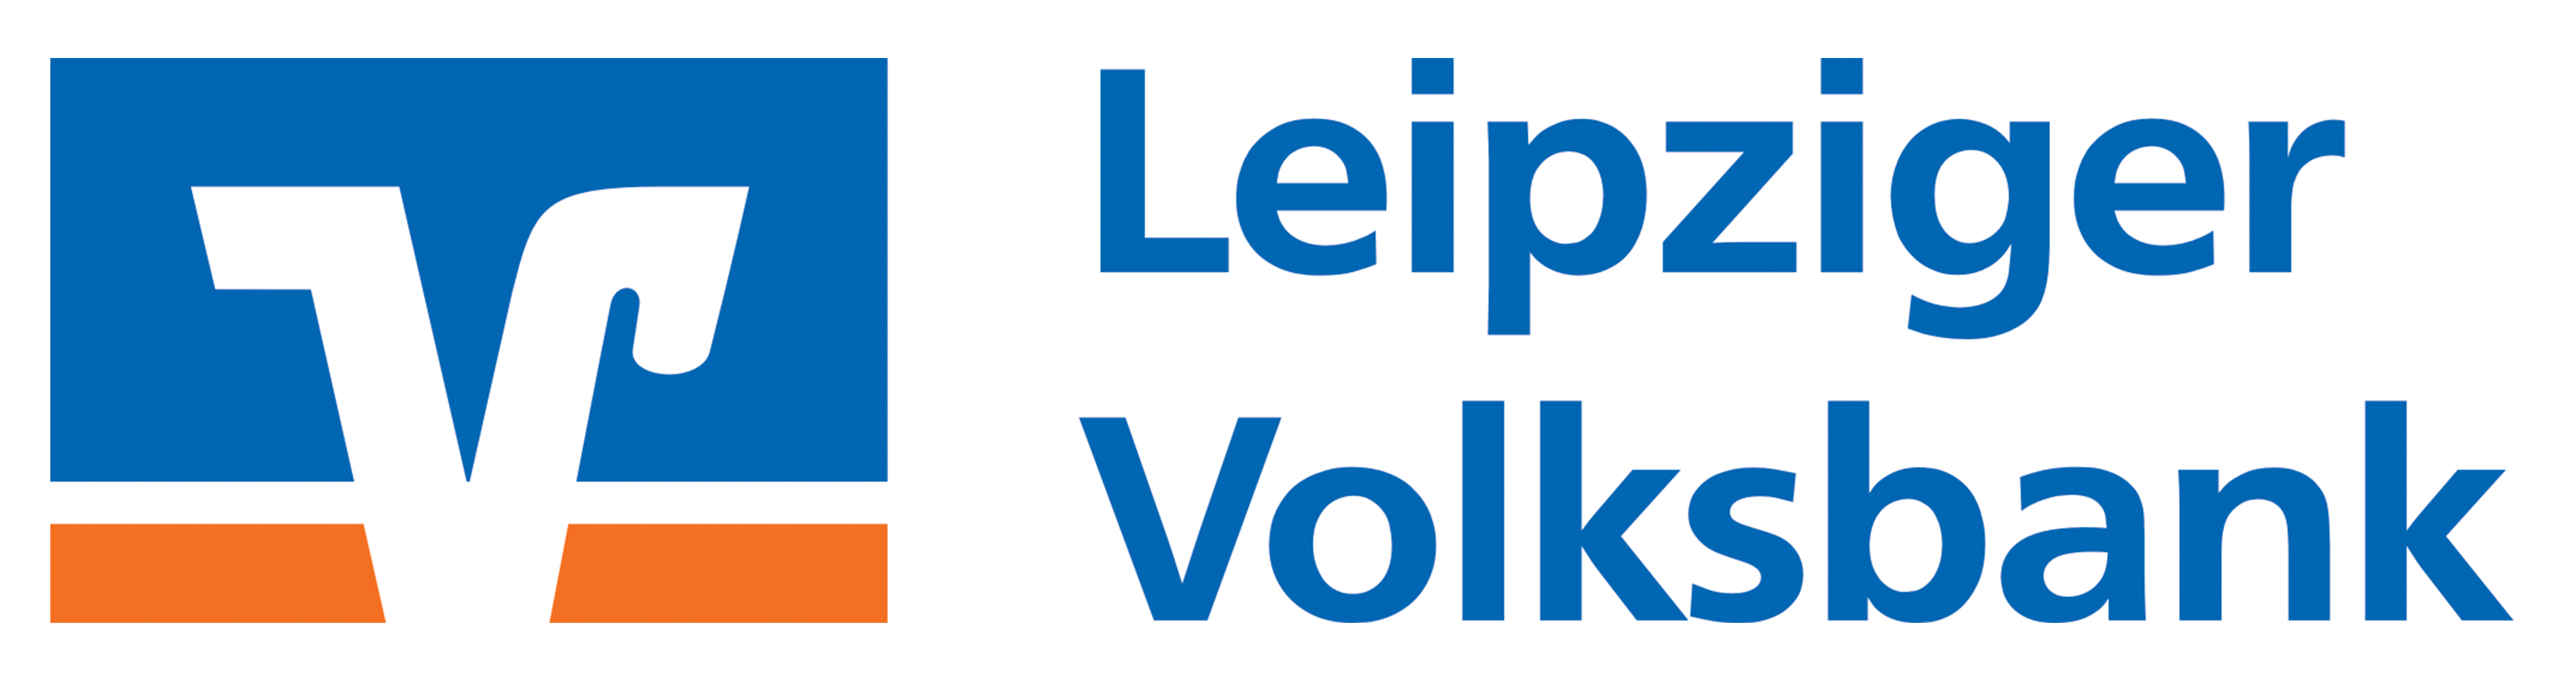 Leipziger Volksbank